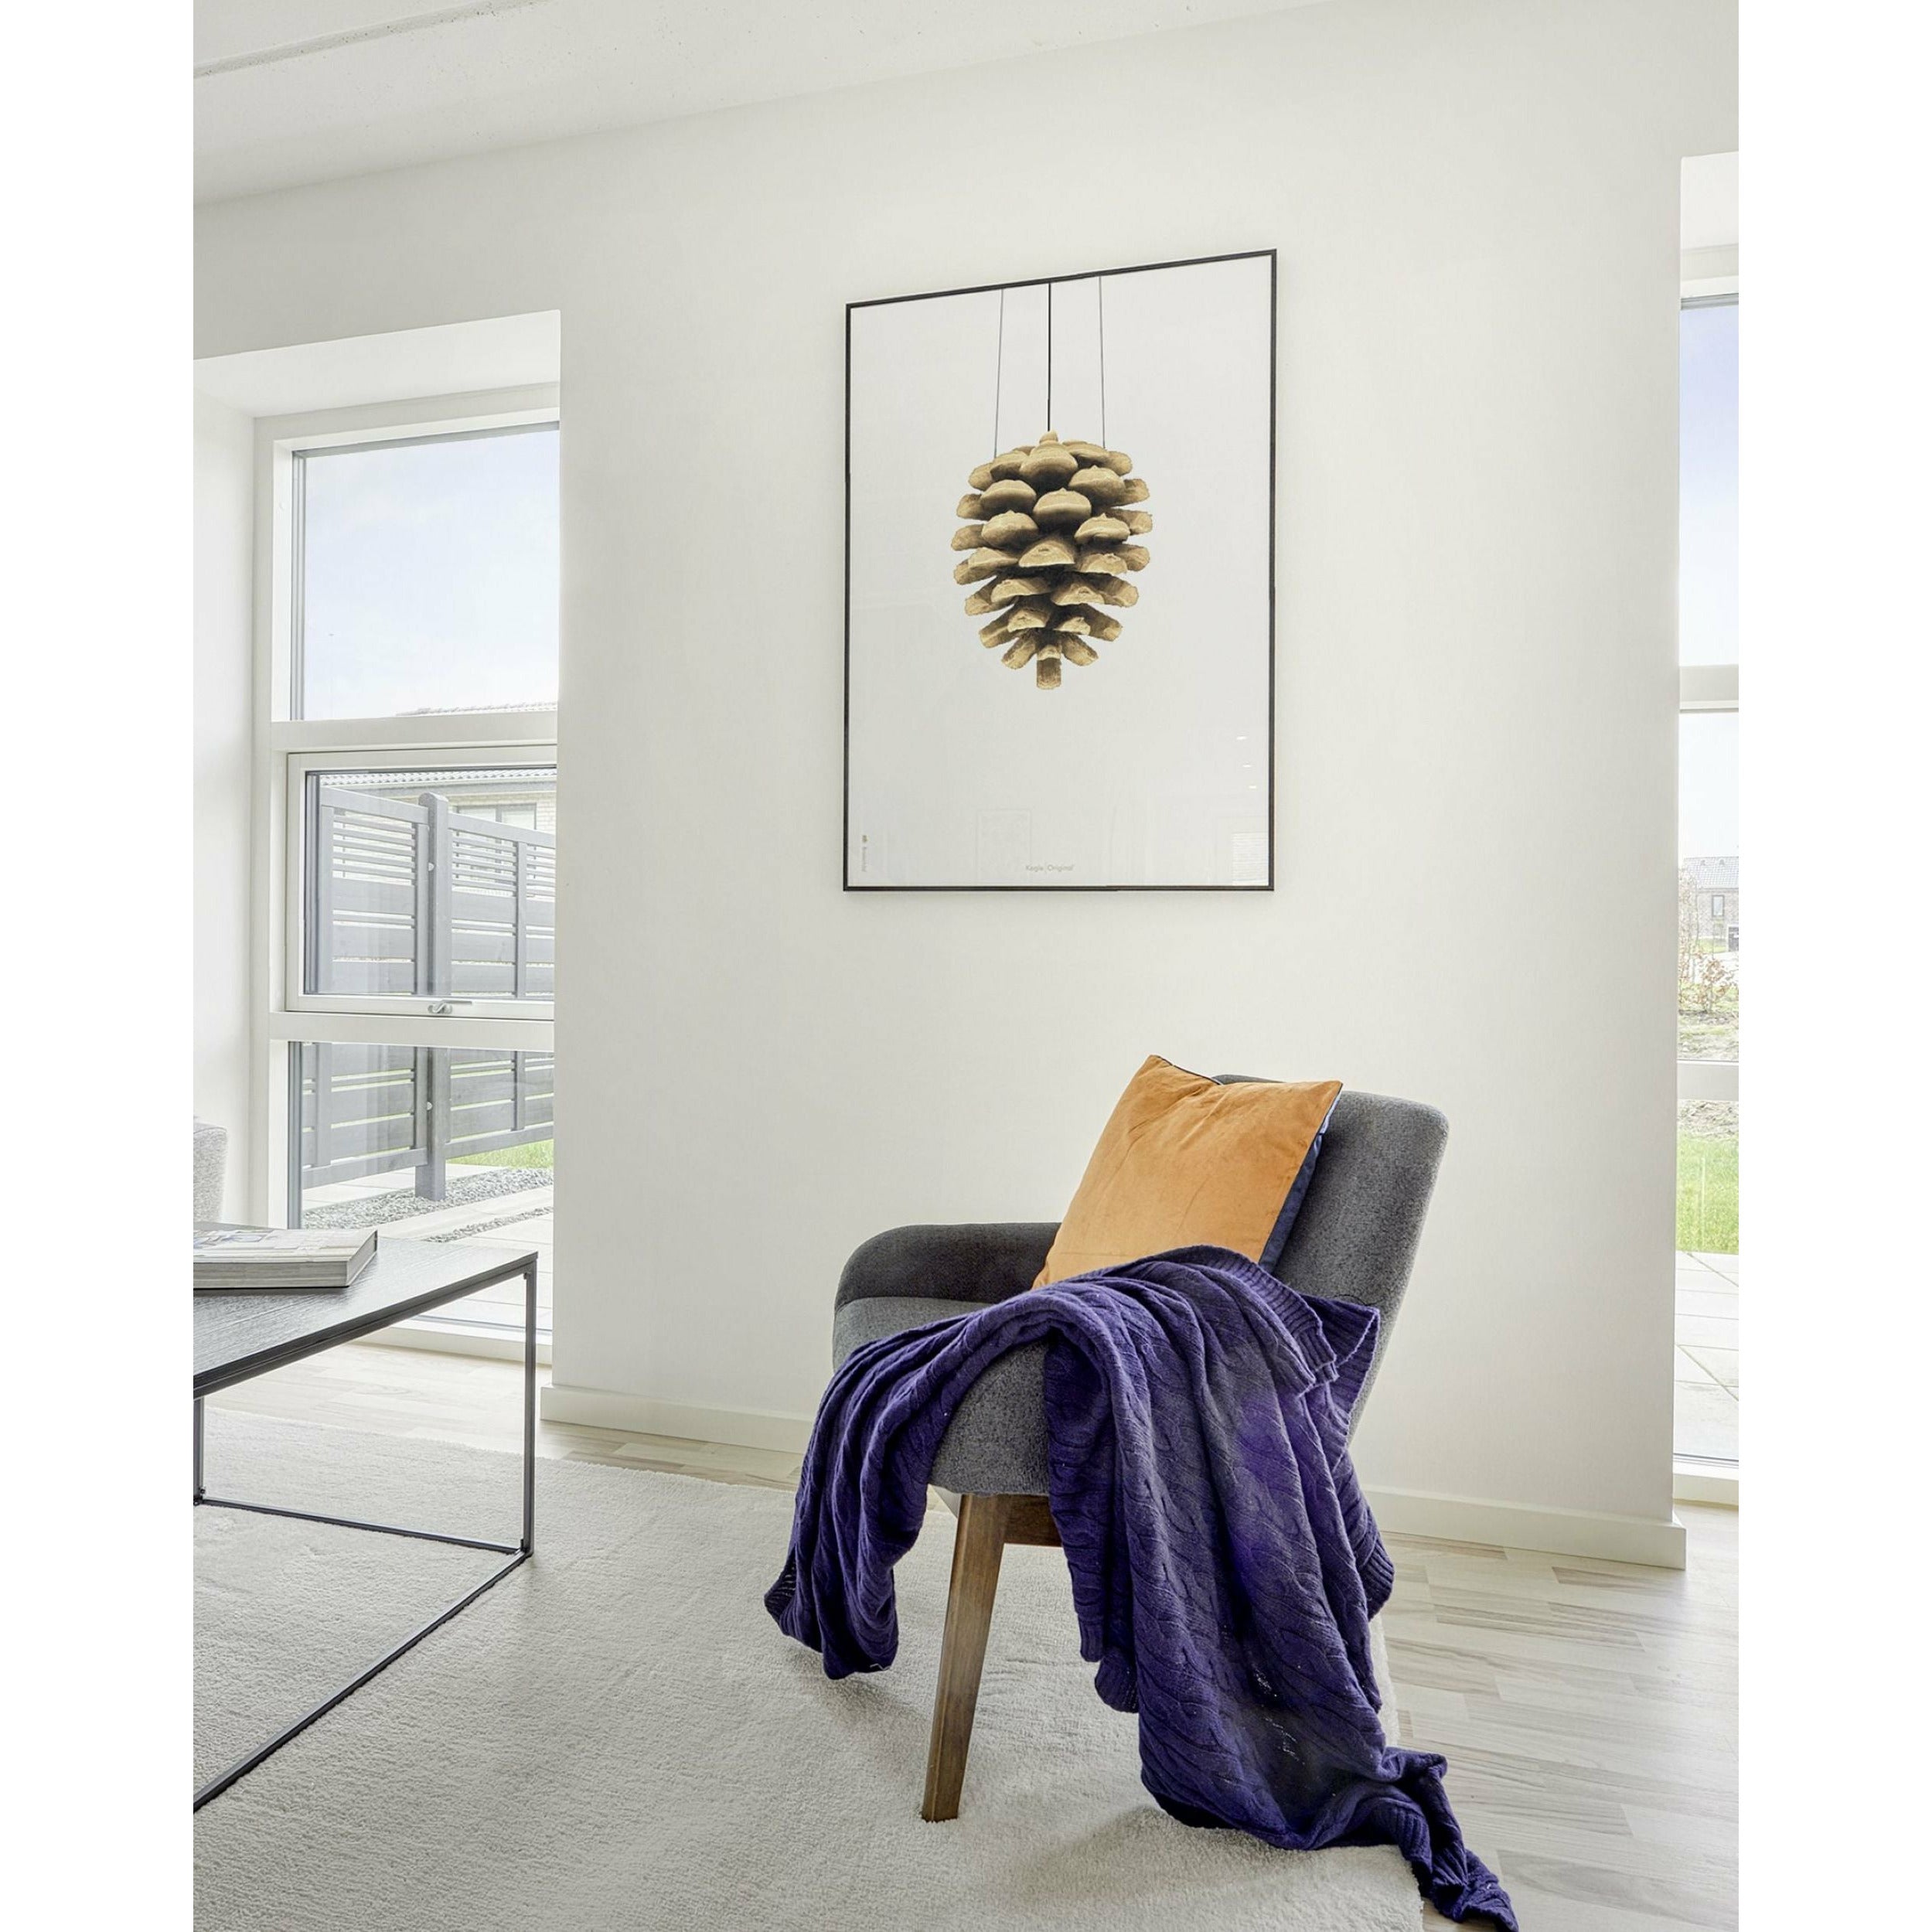 Póster clásico de cono de pino de creación, marco hecho de madera clara de 30x40 cm, fondo blanco